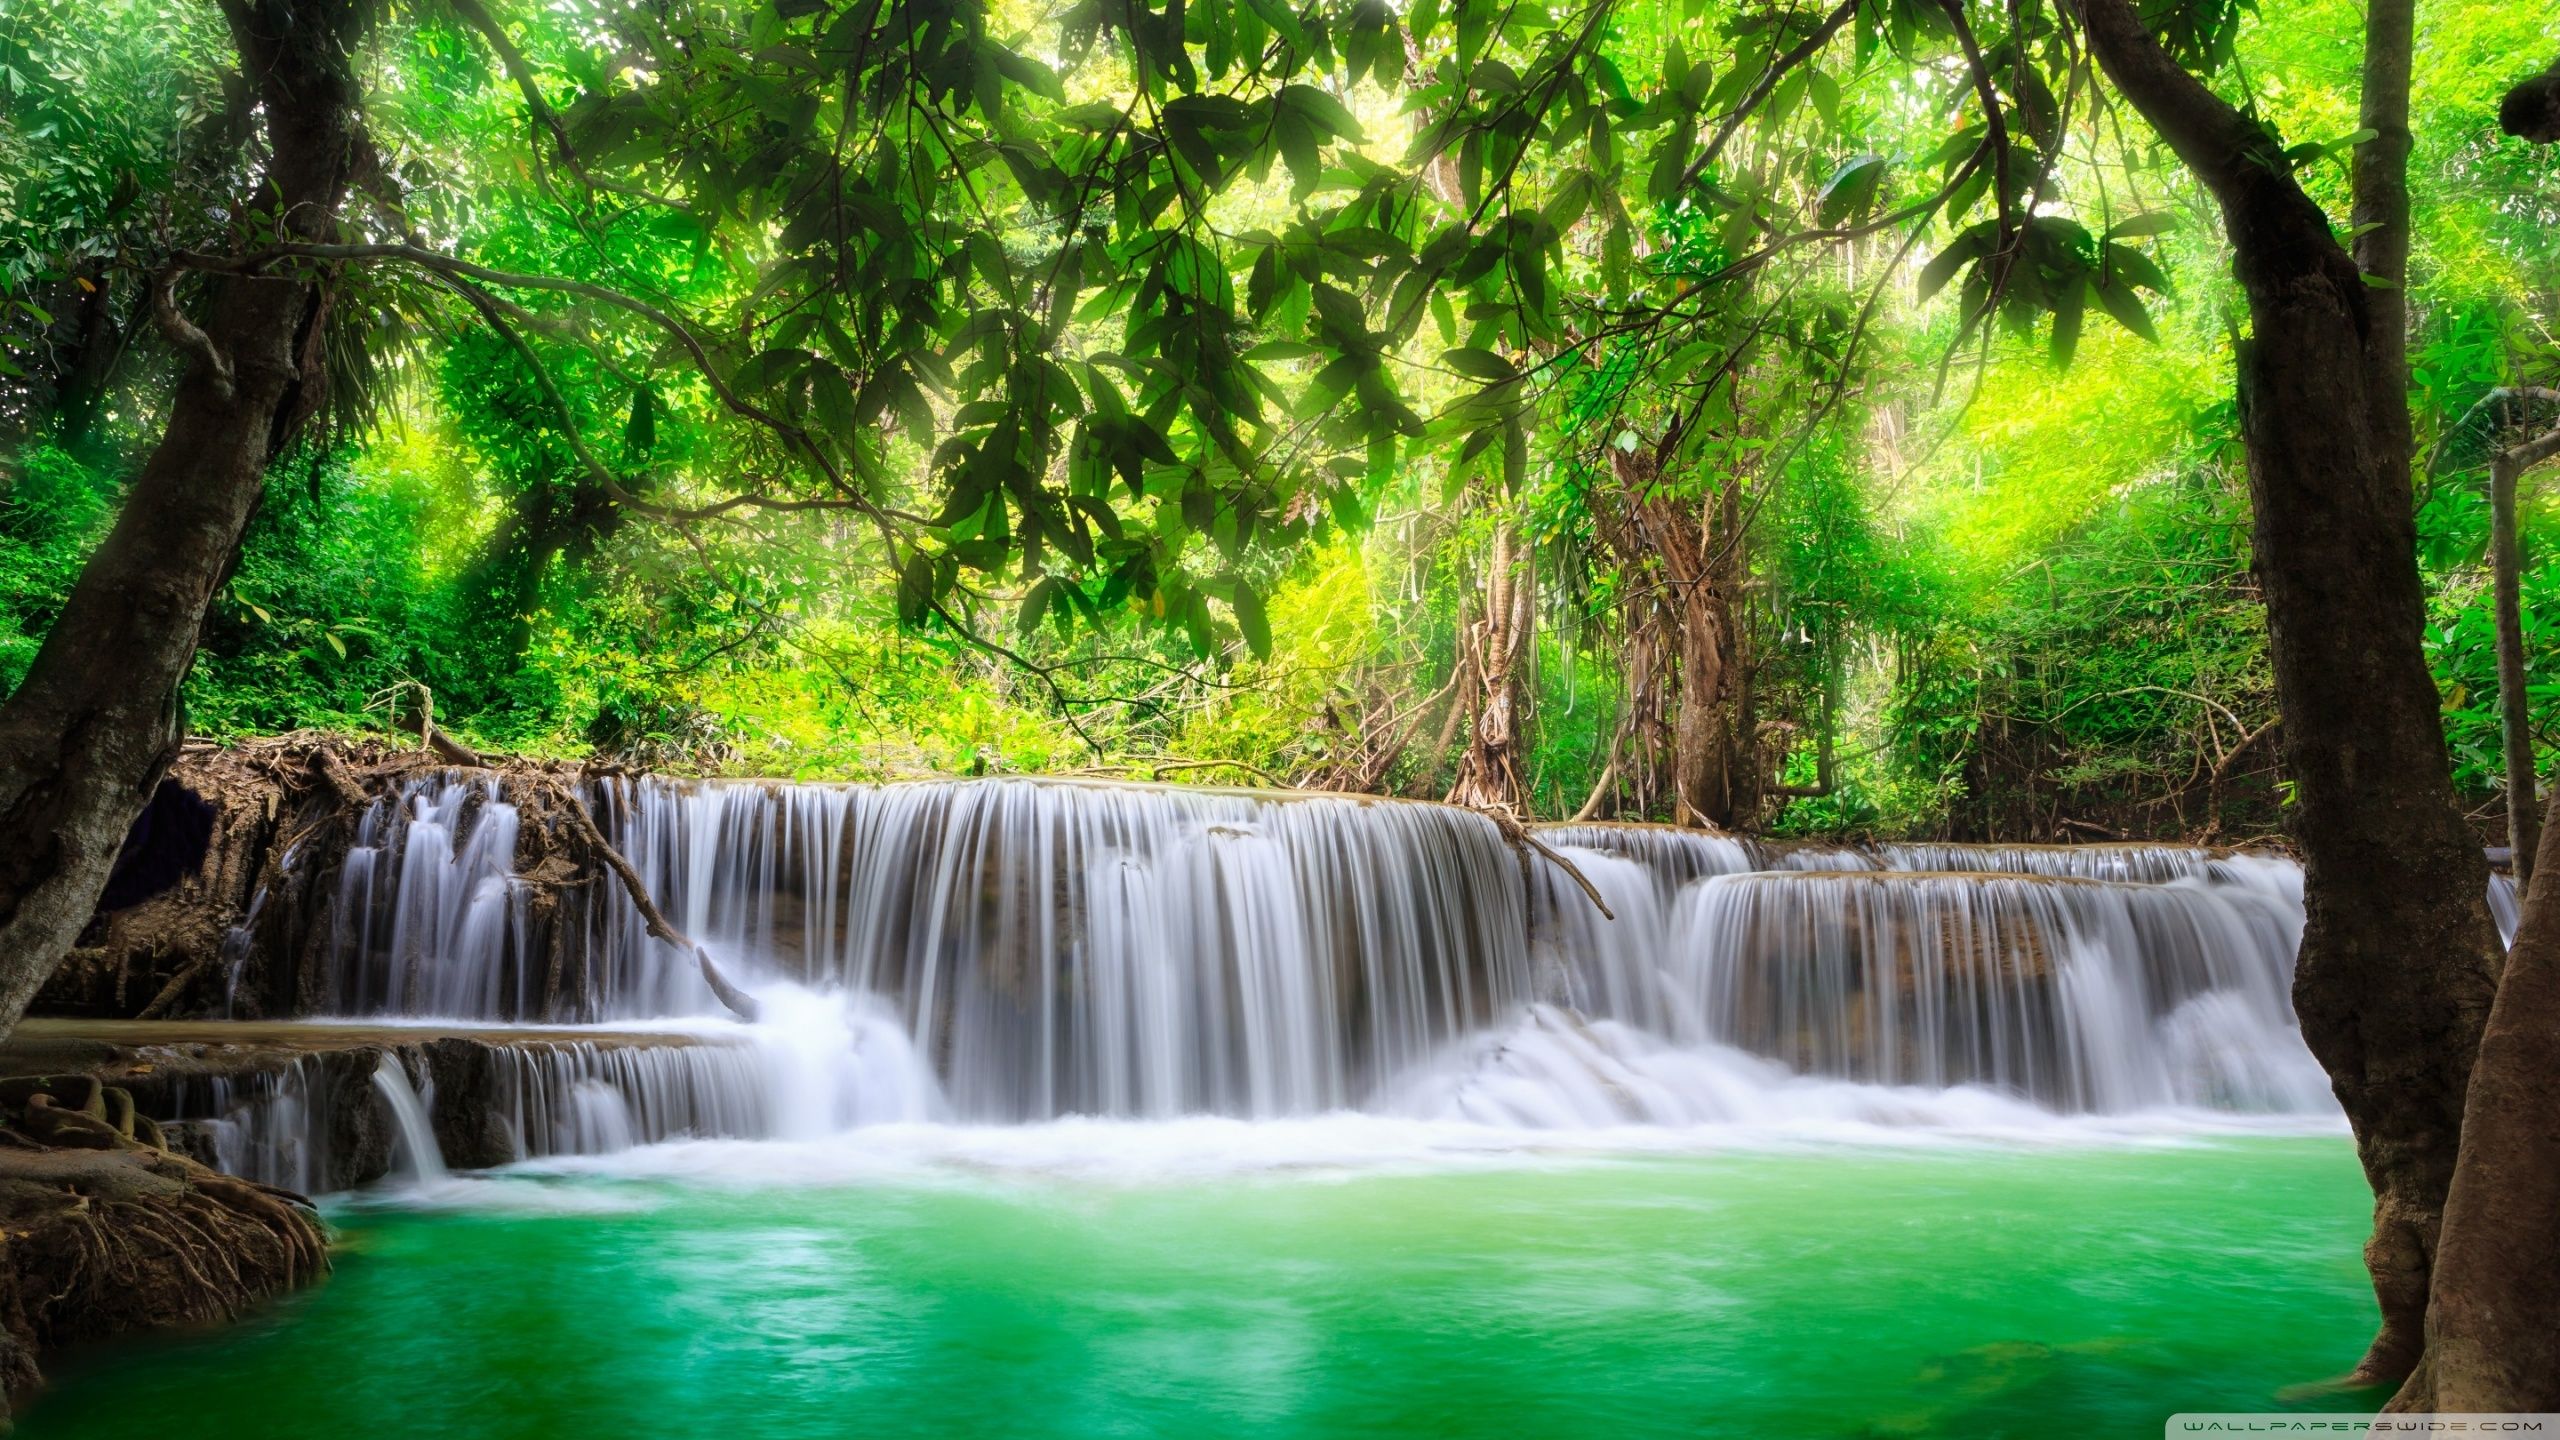 Green Tropical Waterfall ❤ 4k Hd Desktop Wallpaper - High Resolution Waterfall Wallpaper Hd - HD Wallpaper 